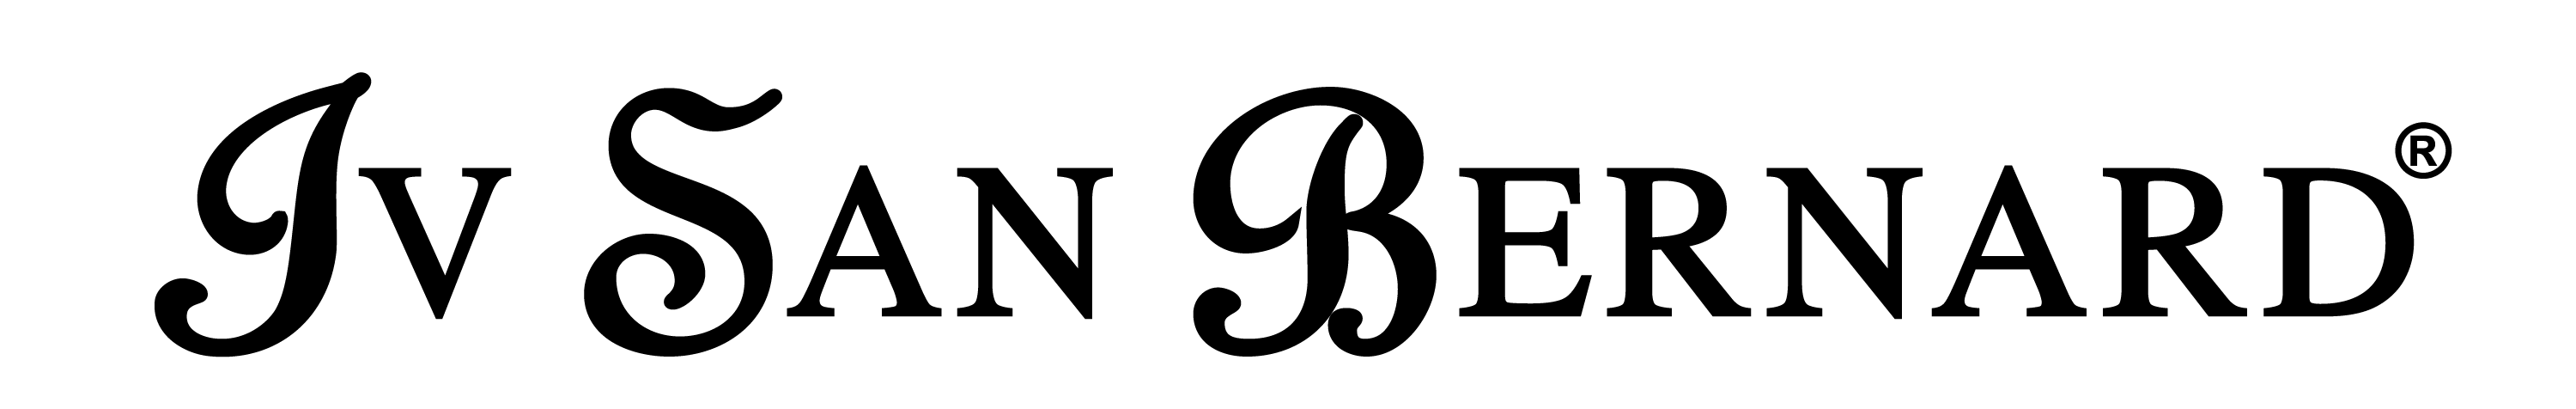 Логотип Iv San Bernard, Италия. Продажа серебряных украшений Iv San Bernard, Италия оптом и в розницу